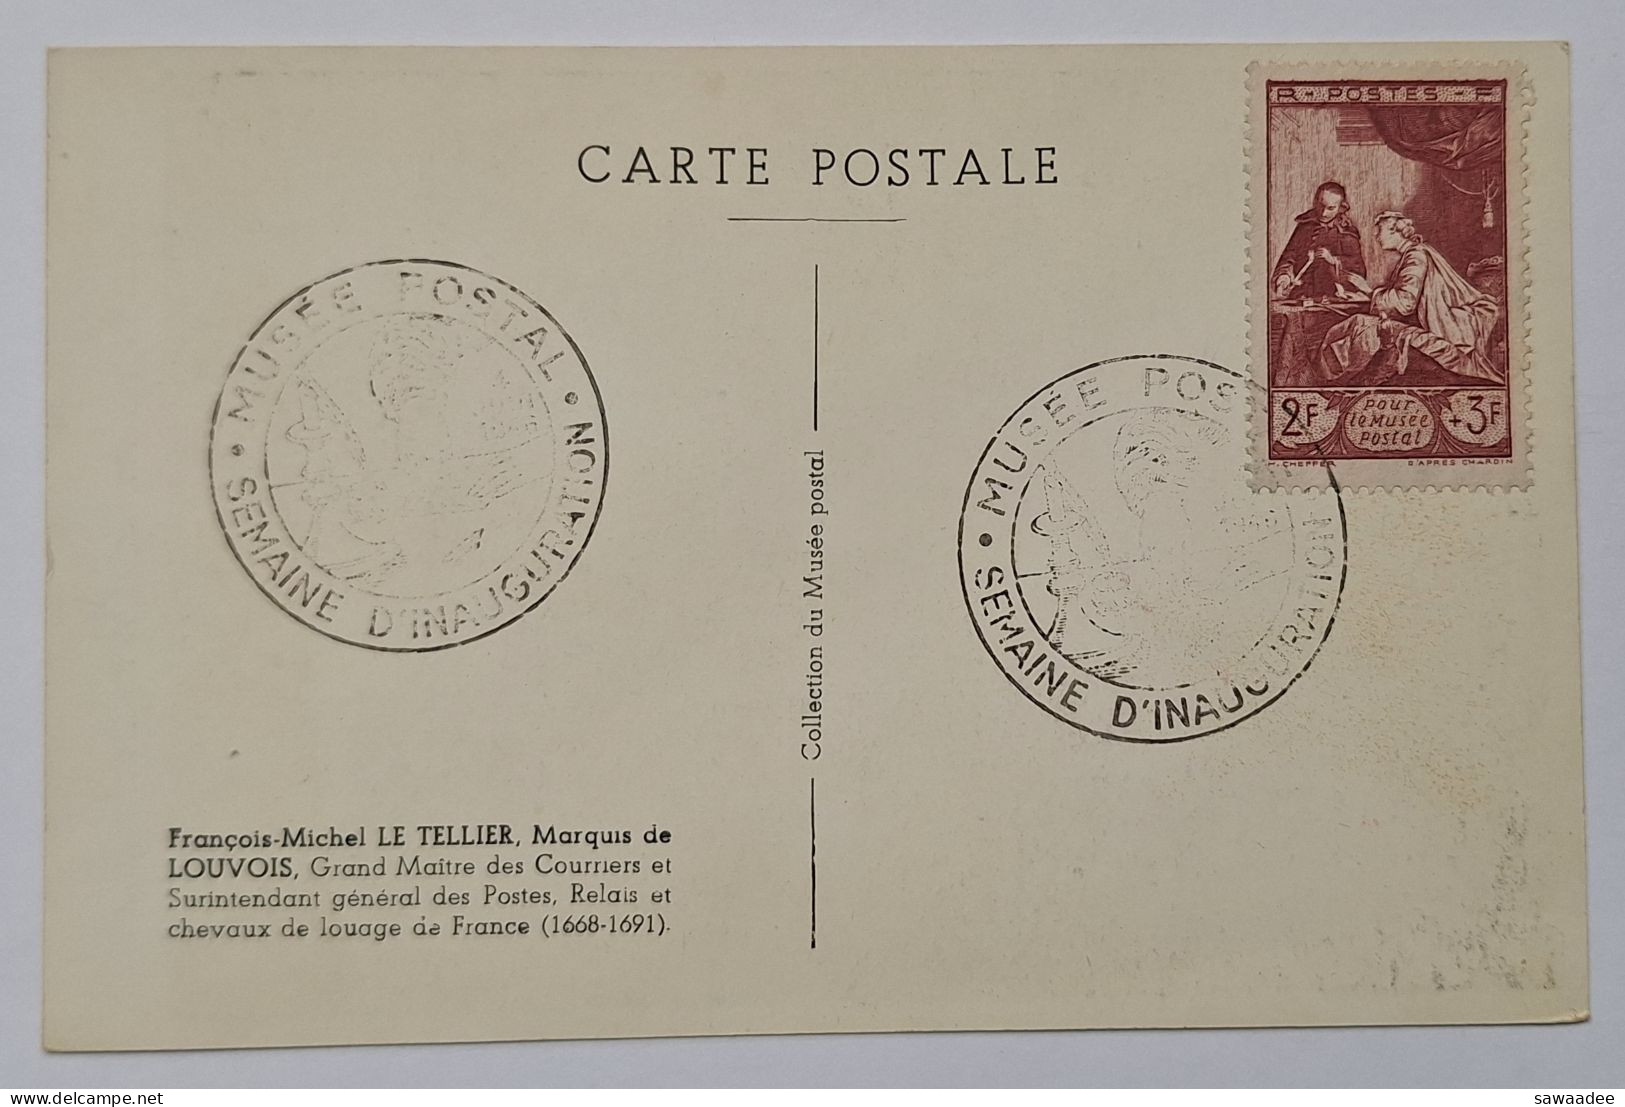 CARTE POSTALE FRANCE - MUSEE POSTAL - SEMAINE D'INAUGURATION - FRANCOIS MICHEL LE TELLIER MARQUIS DE LOUVOIS - Postal Services